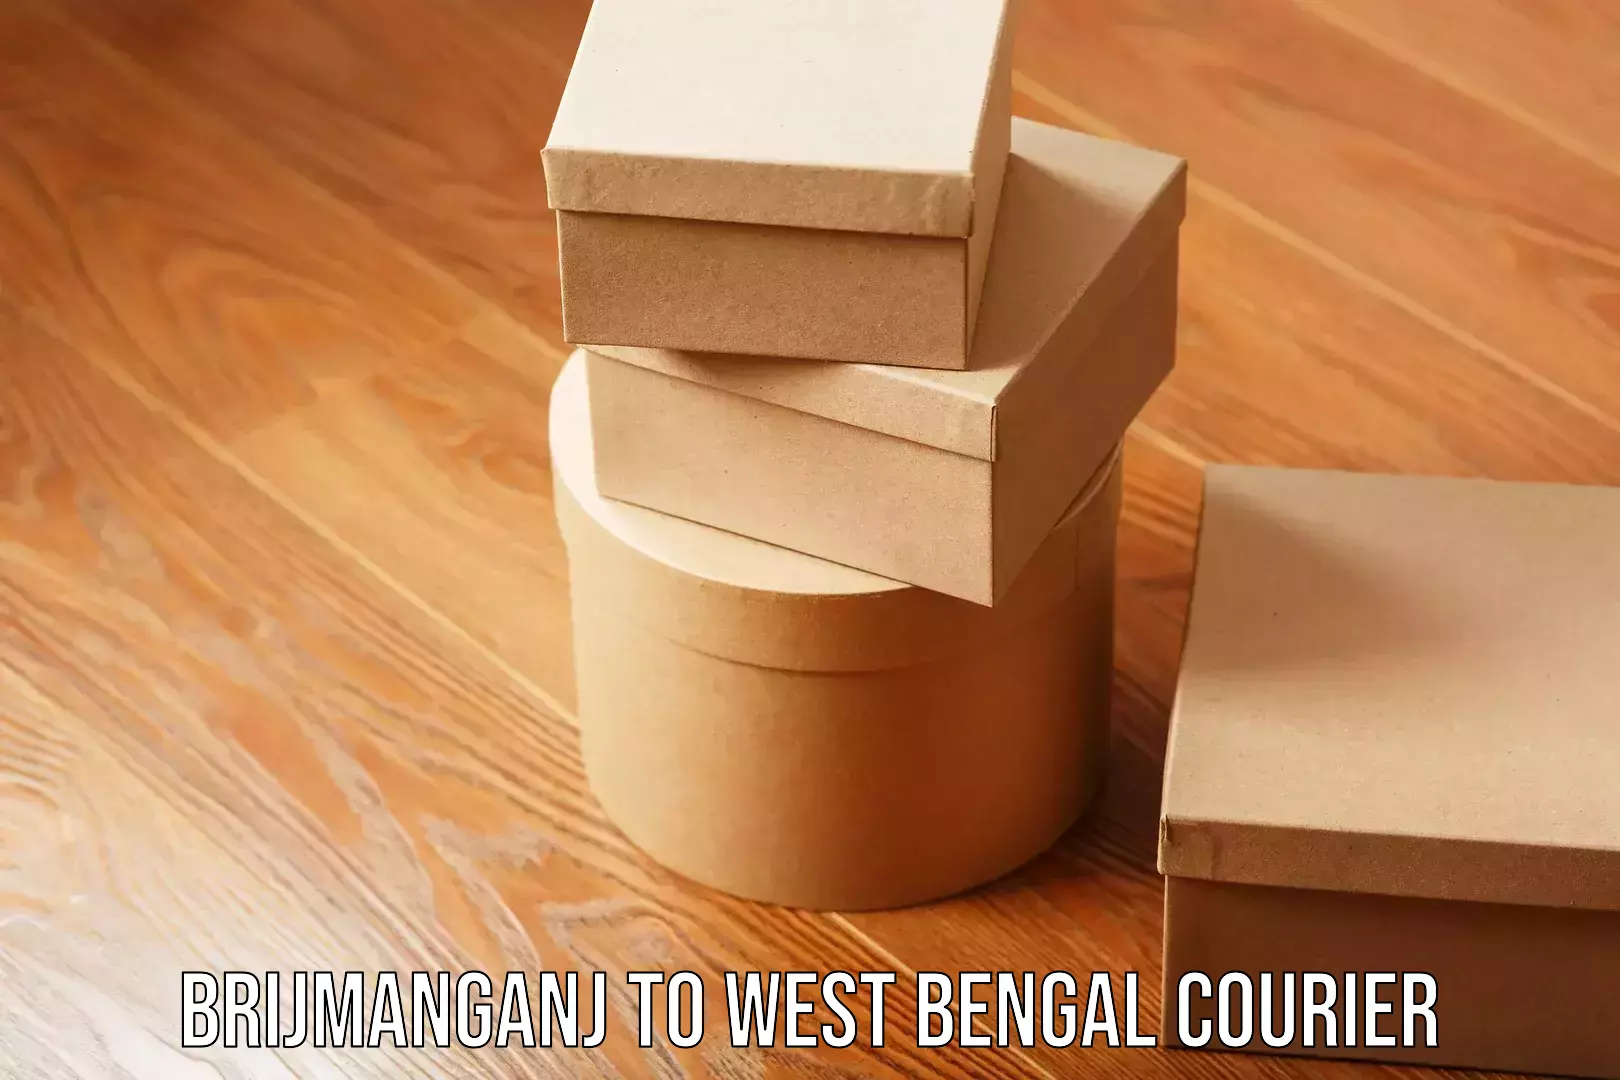 Reliable courier service Brijmanganj to West Bengal